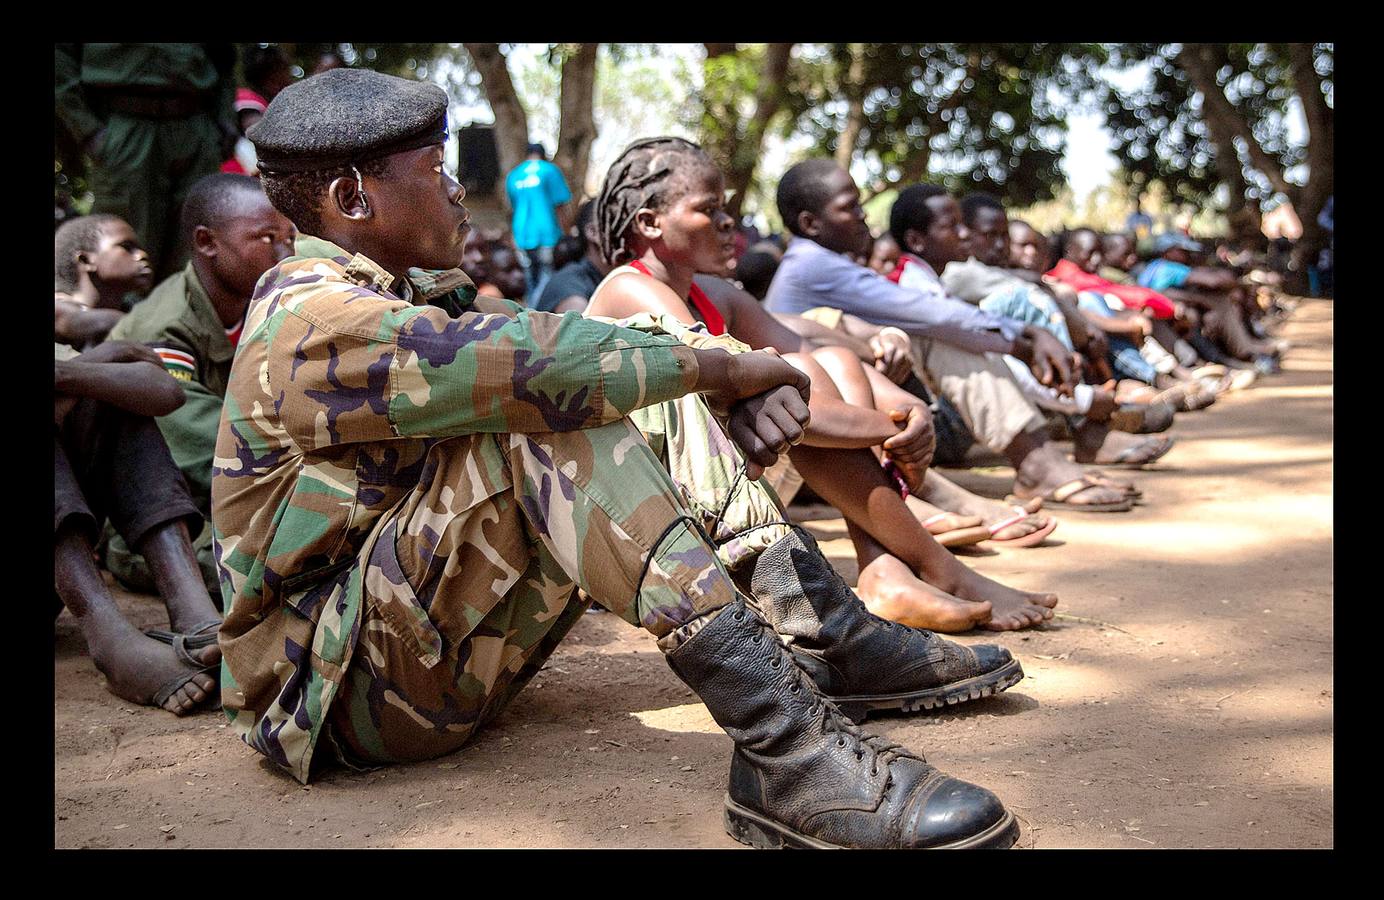 Más de 300 niños soldados, incluidas 87 niñas, han sido liberados en la región de Yambio, devastada por la guerra de Sudán del Sur, como parte de un programa destinado a ayudar a reintegrarlos en la sociedad. El conflicto en Sudán del Sur, un nuevo país surgido de la independencia de Sudán en 2011, se inició dos años después de la escisión, ha causado la muerte a decenas de miles de personas y ha generado el desarraigo de más de cuatro millones. El programa de integración en Yambio (las fotografías muestran la ceremonia de liberación en esa localidad, al sur del país), tiene como objetivo ayudar a más de 700 niños soldados para que regresen a la vida normal.